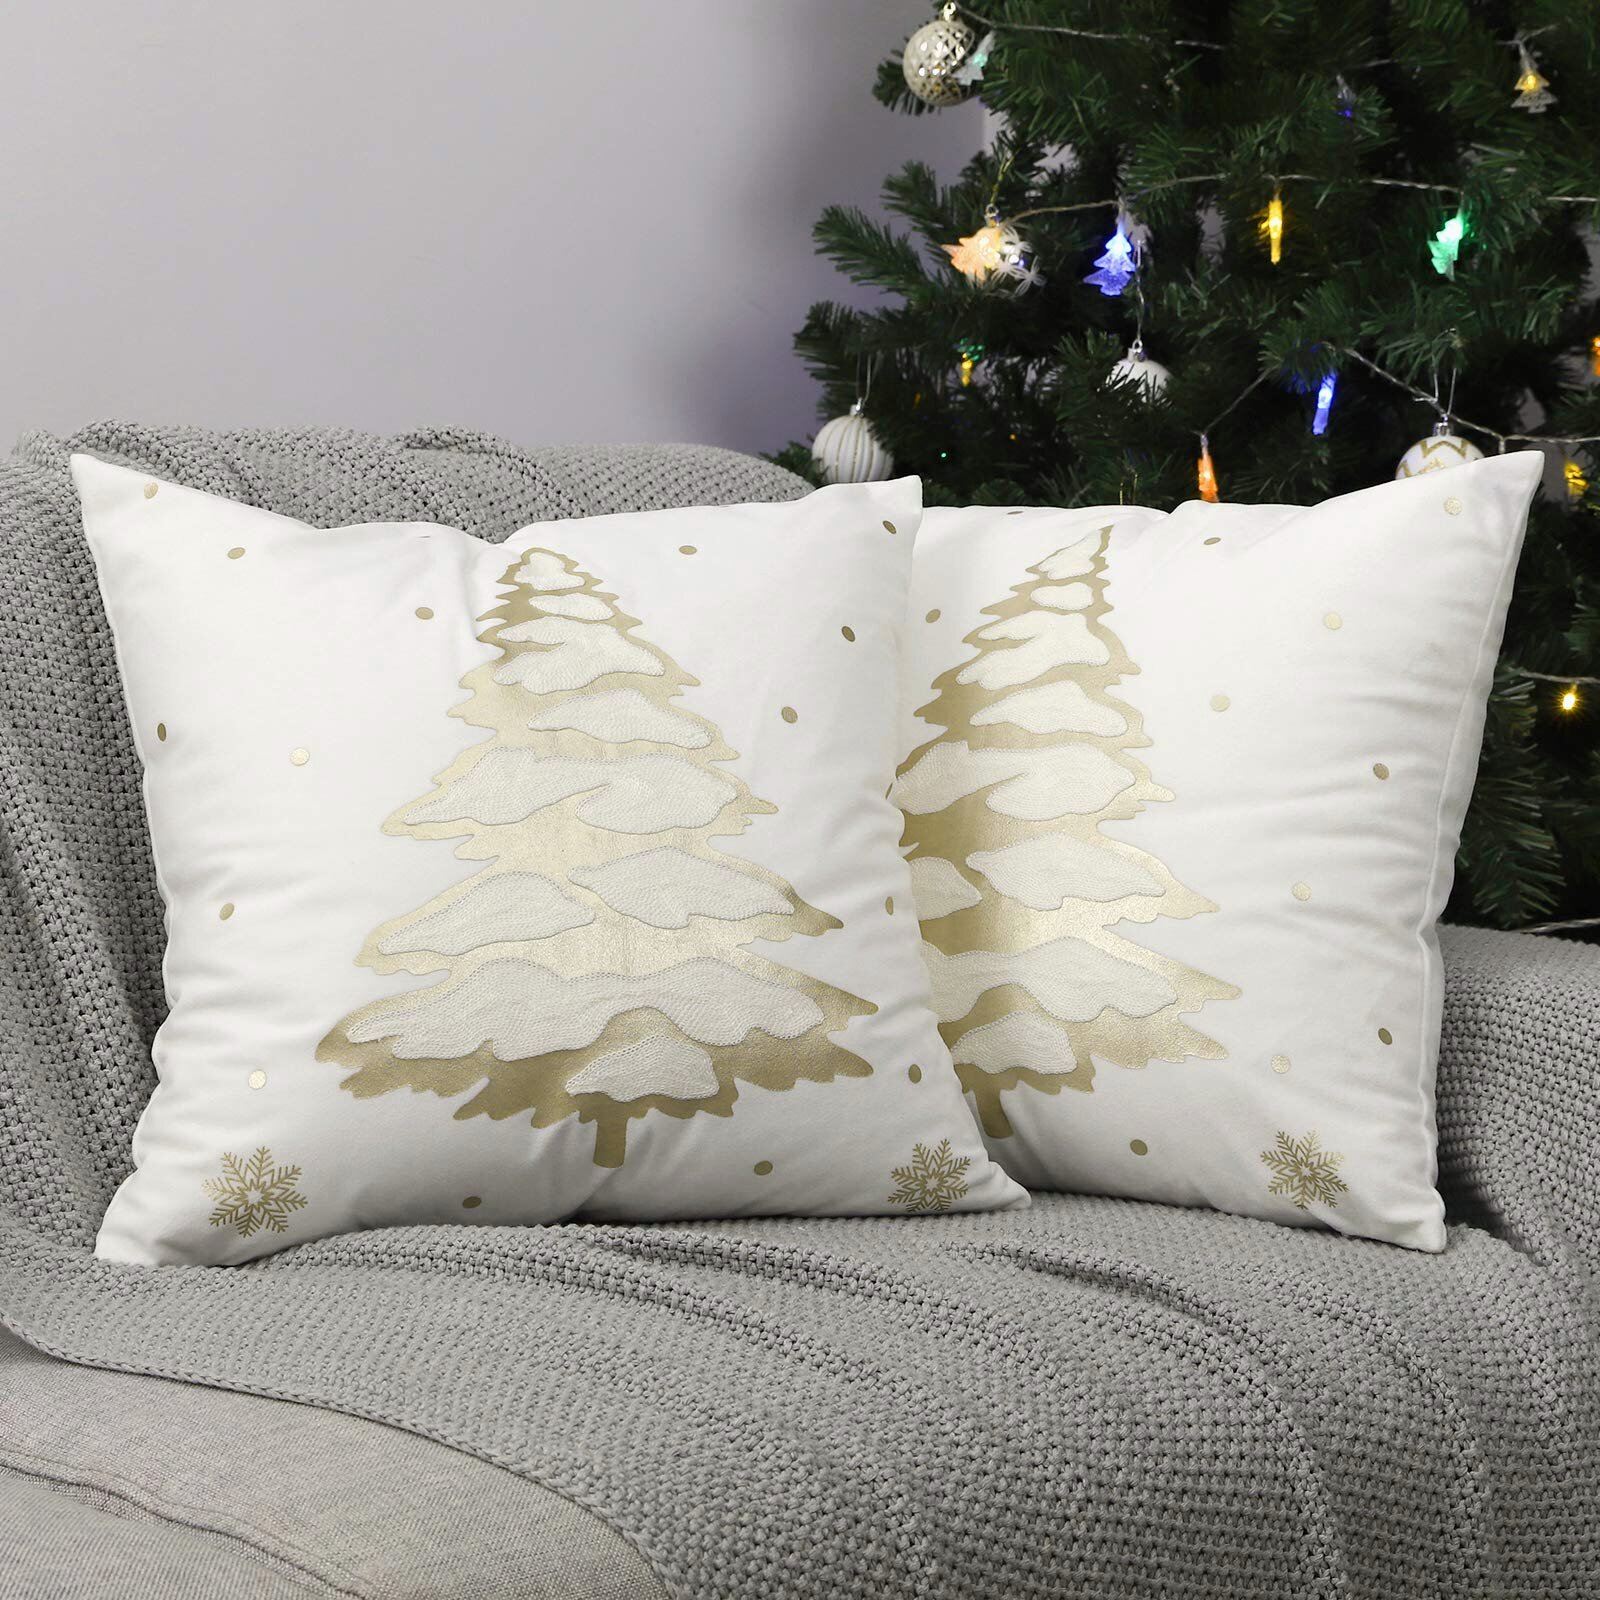 4PCS 18" Christmas Xmas Cushion Cover Case Pillow Home Sofa Throw Home Decor US 